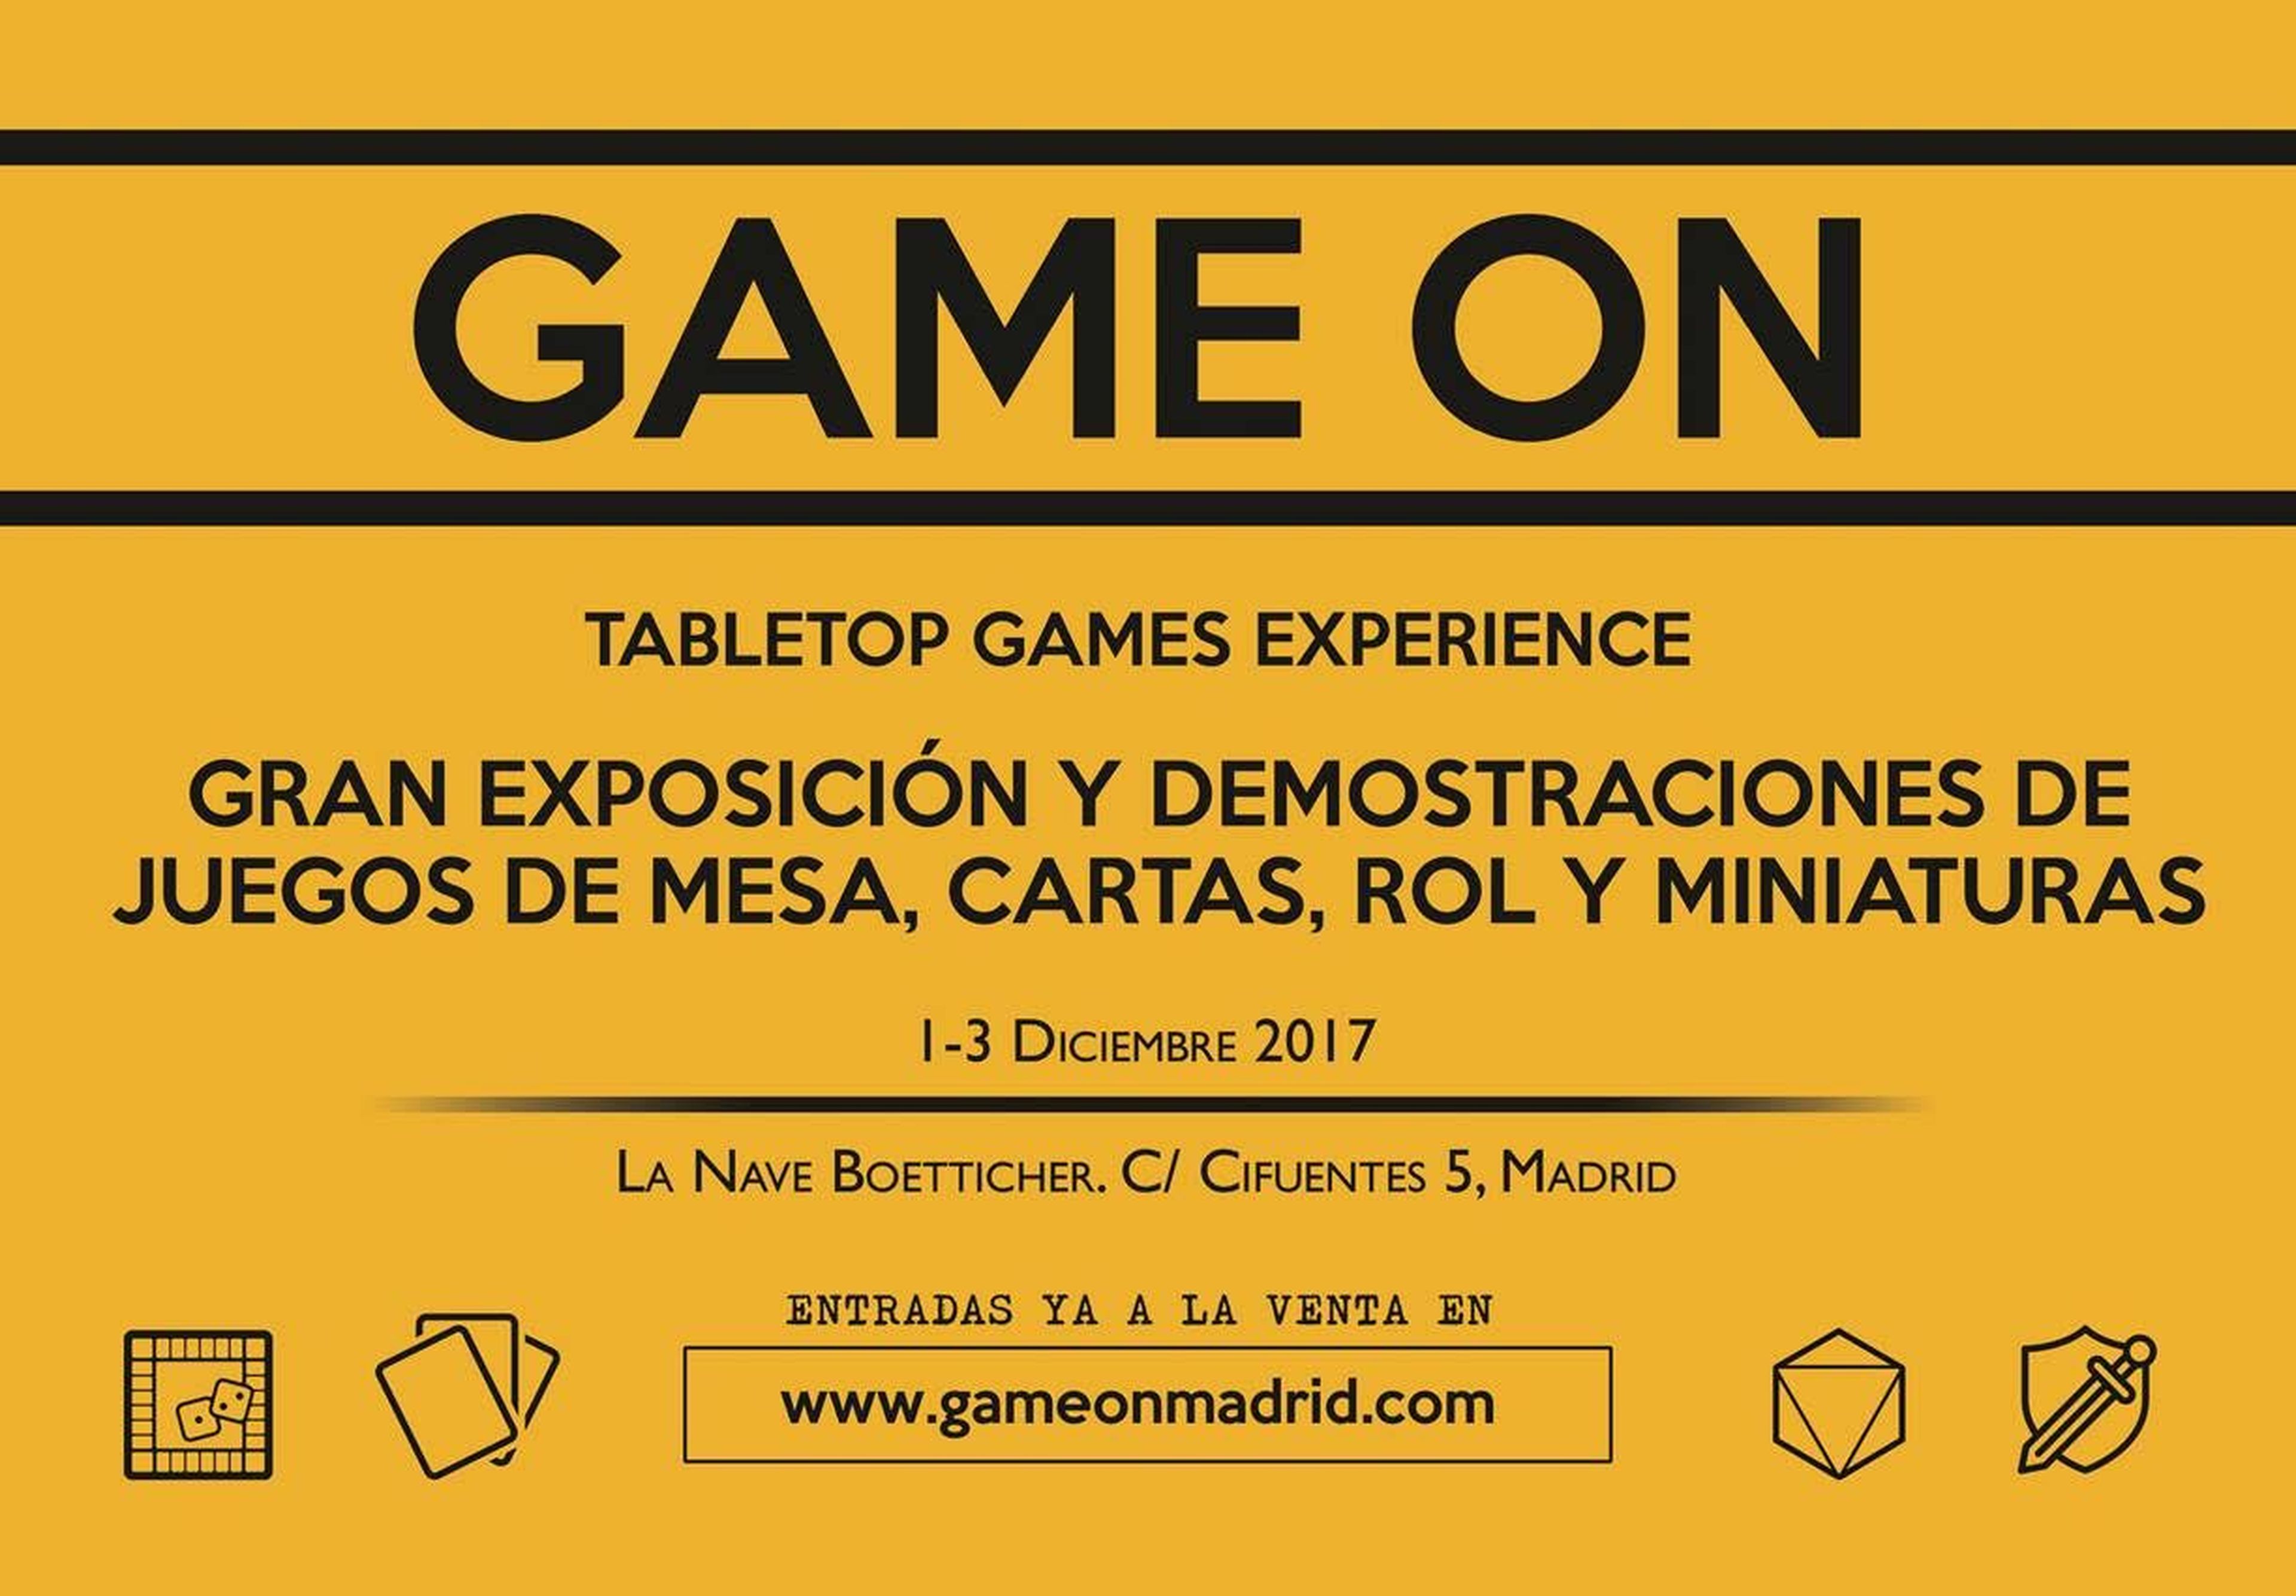 Game On, la I feria internacional de juegos de mesa de España, se anuncia oficialmente